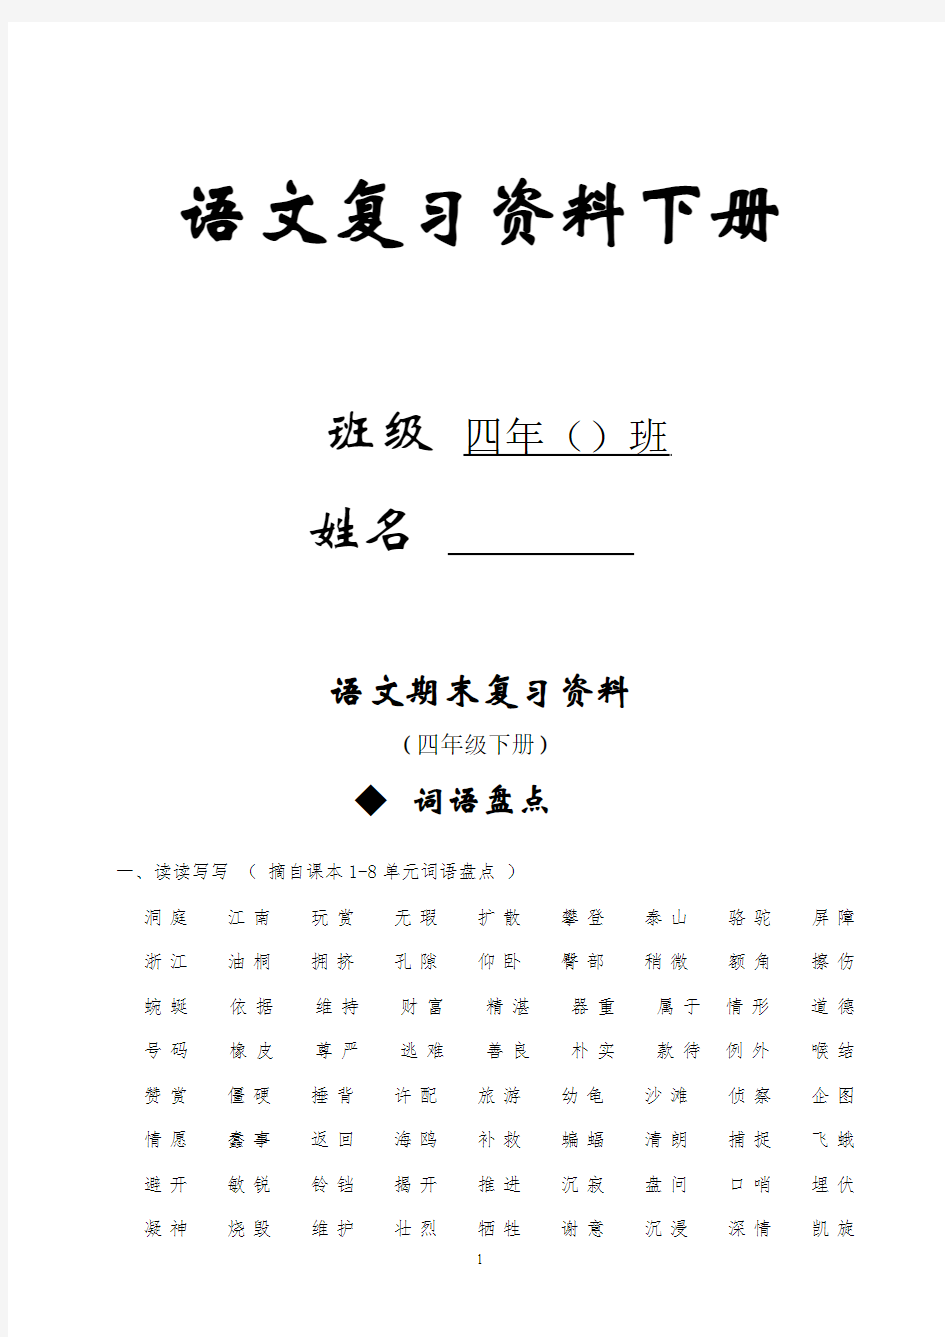 2016年人教版四年级下册语文总复习资料(完美版) (1)